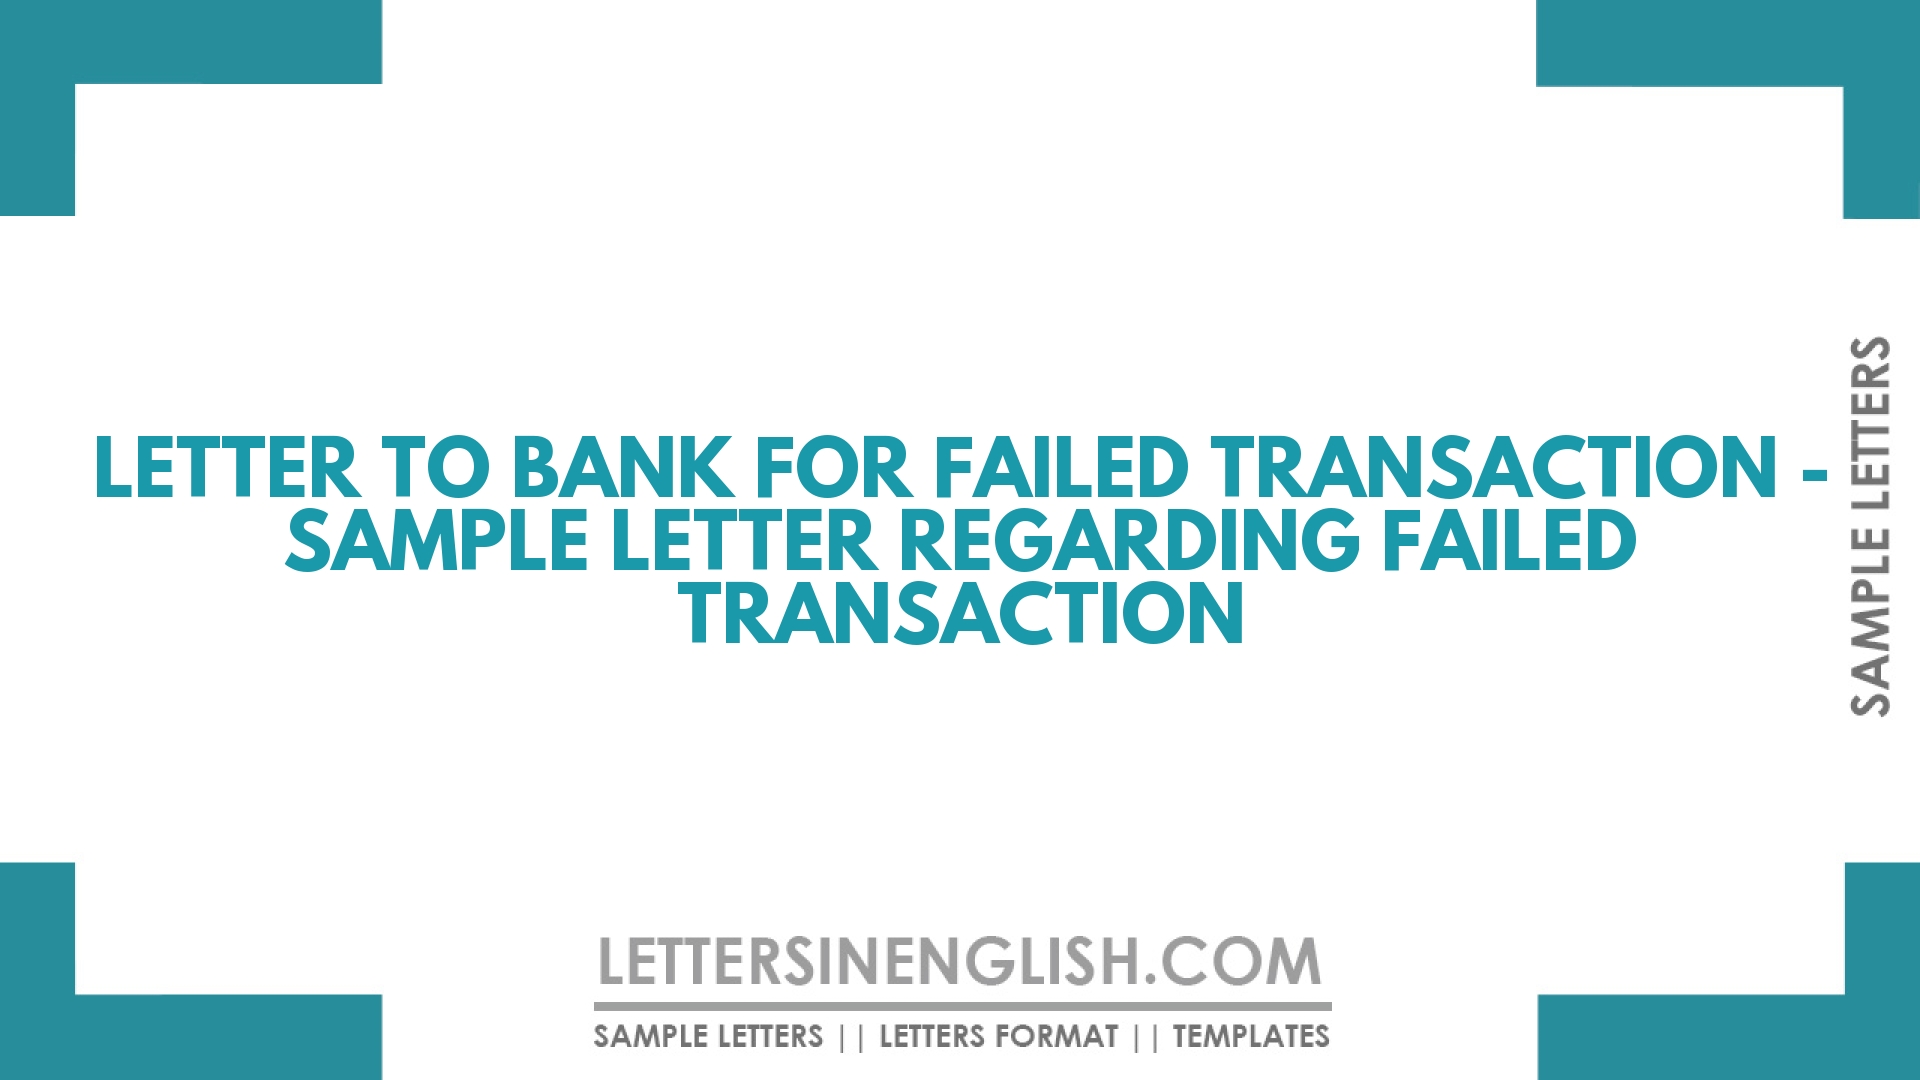 Letter to Bank for Failed Transaction Sample Letter Regarding Failed